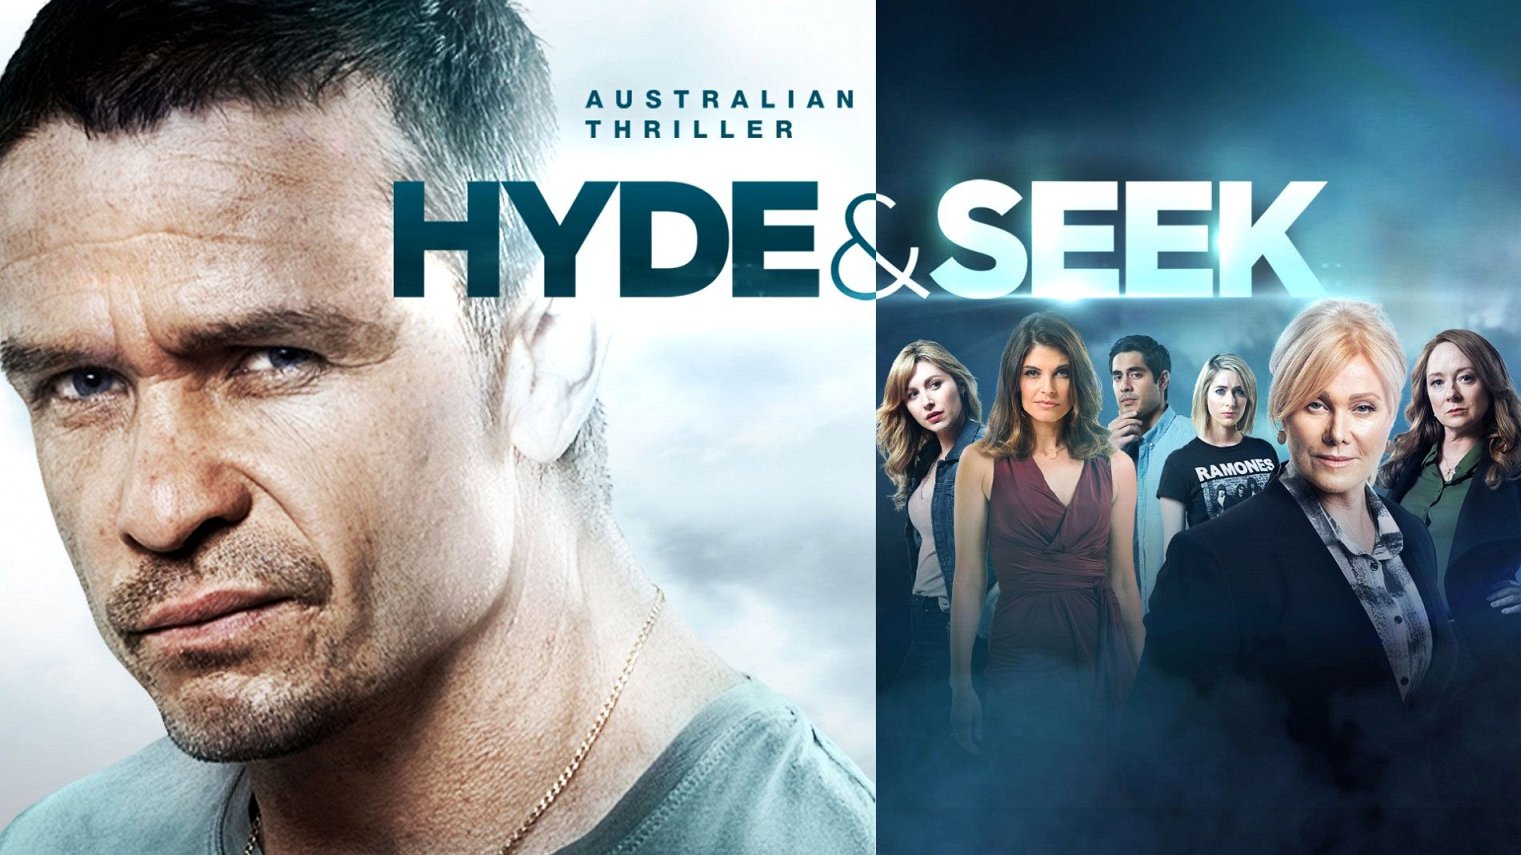 cast of Hyde & Seek season 1